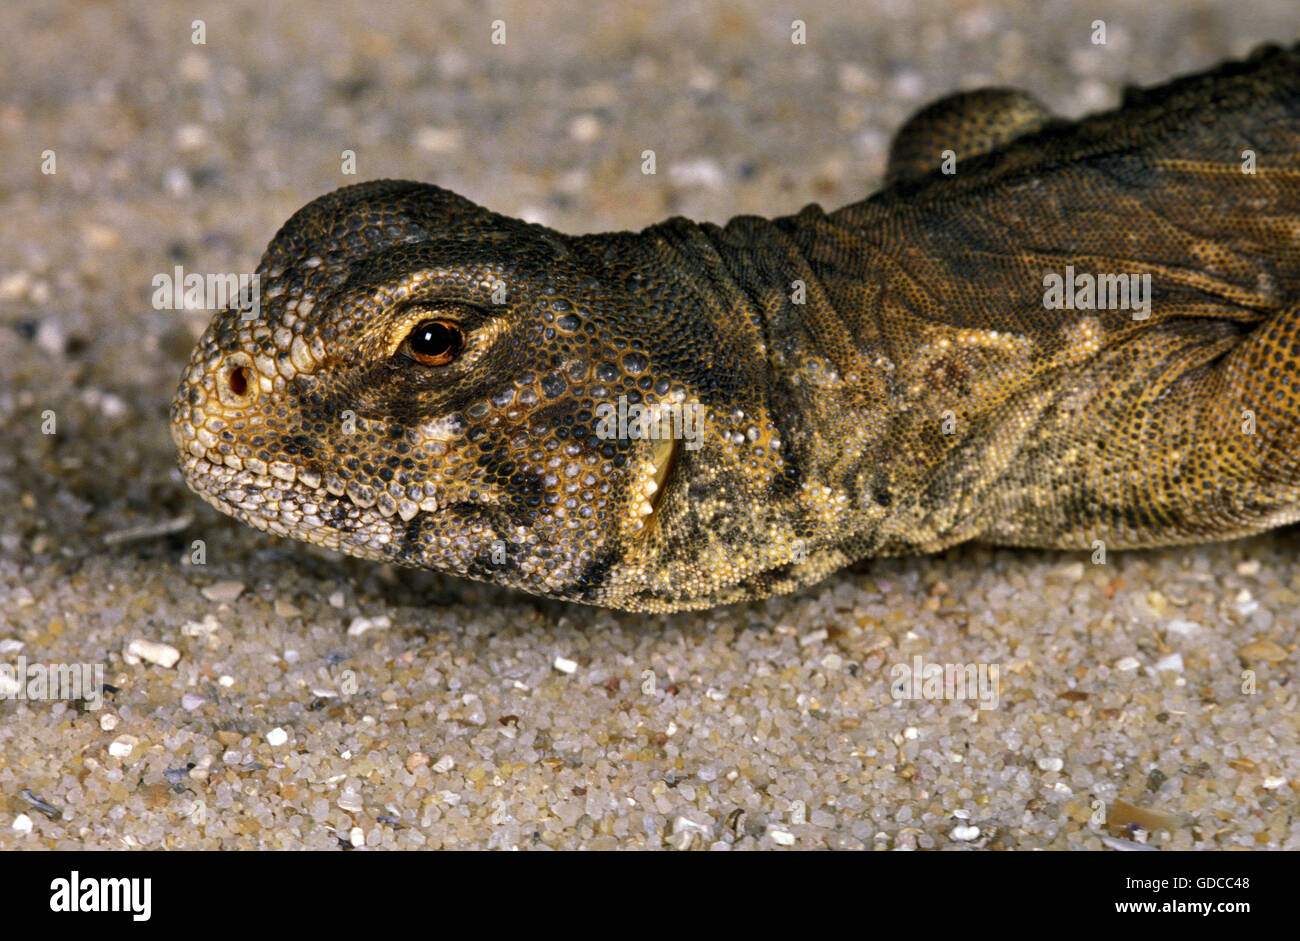 Egyptian Spiny-Tailed Lizard, uromastyx aegyptius, Portrait of Adult Stock Photo